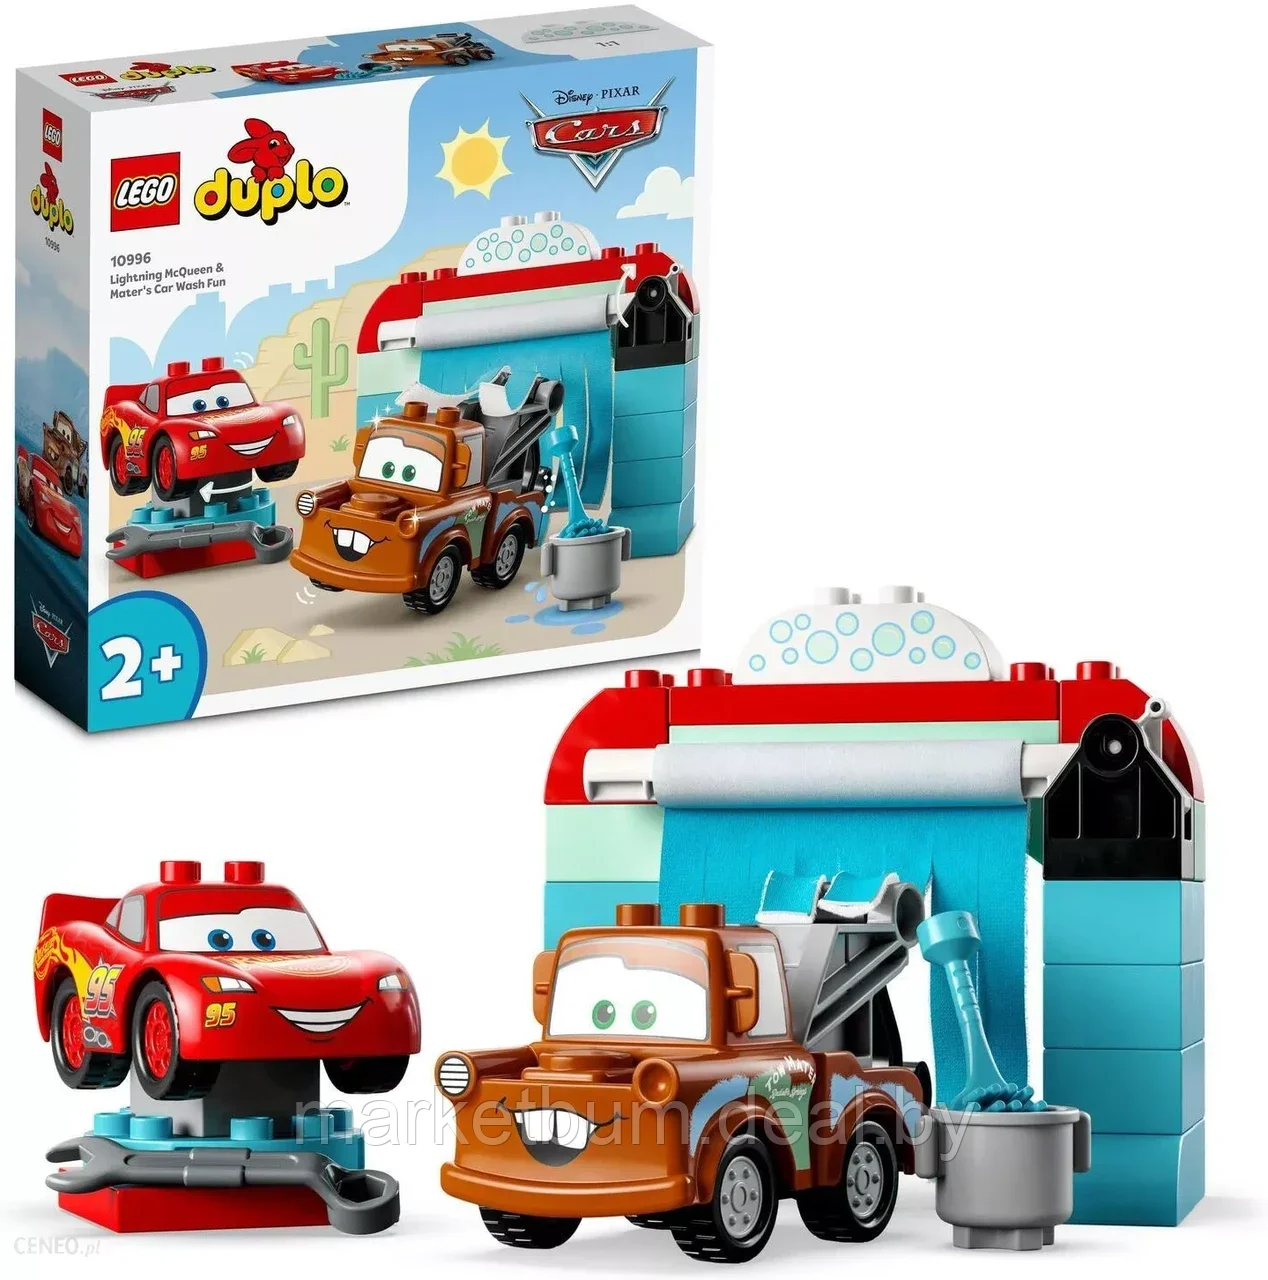 Конструктор LEGO DUPLO Disney 10996, Молния МакКуин и Мэтр — Автомойка